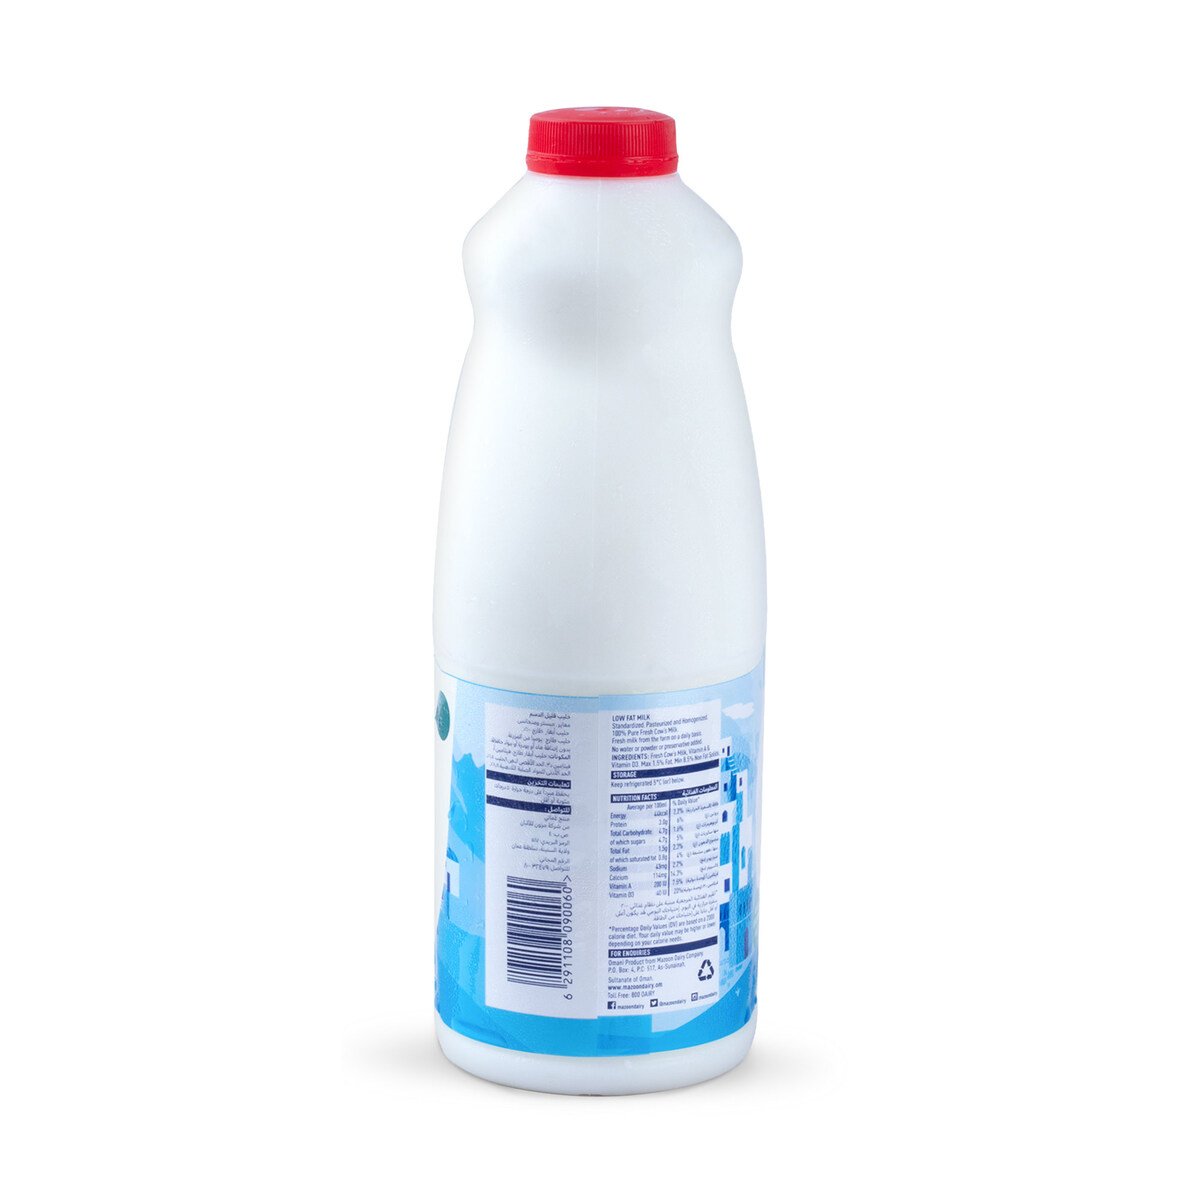 Mazoon Fresh Milk Low Fat 2Litre